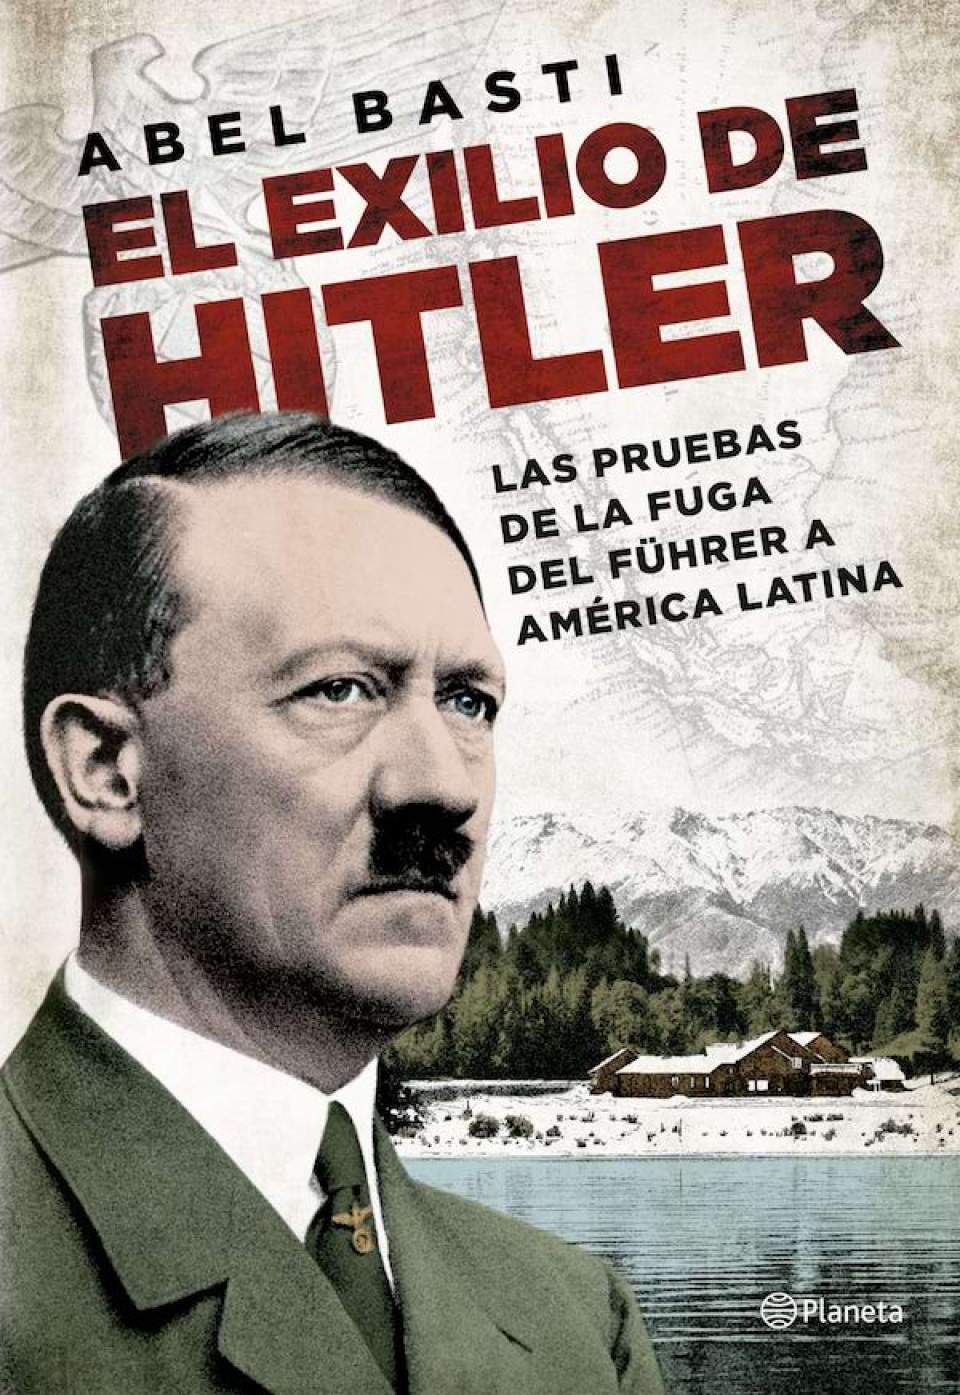 &quot;El exilio de Hitler&quot; de Abel Basti: nebulosas y mentiras de la Historia Oficial